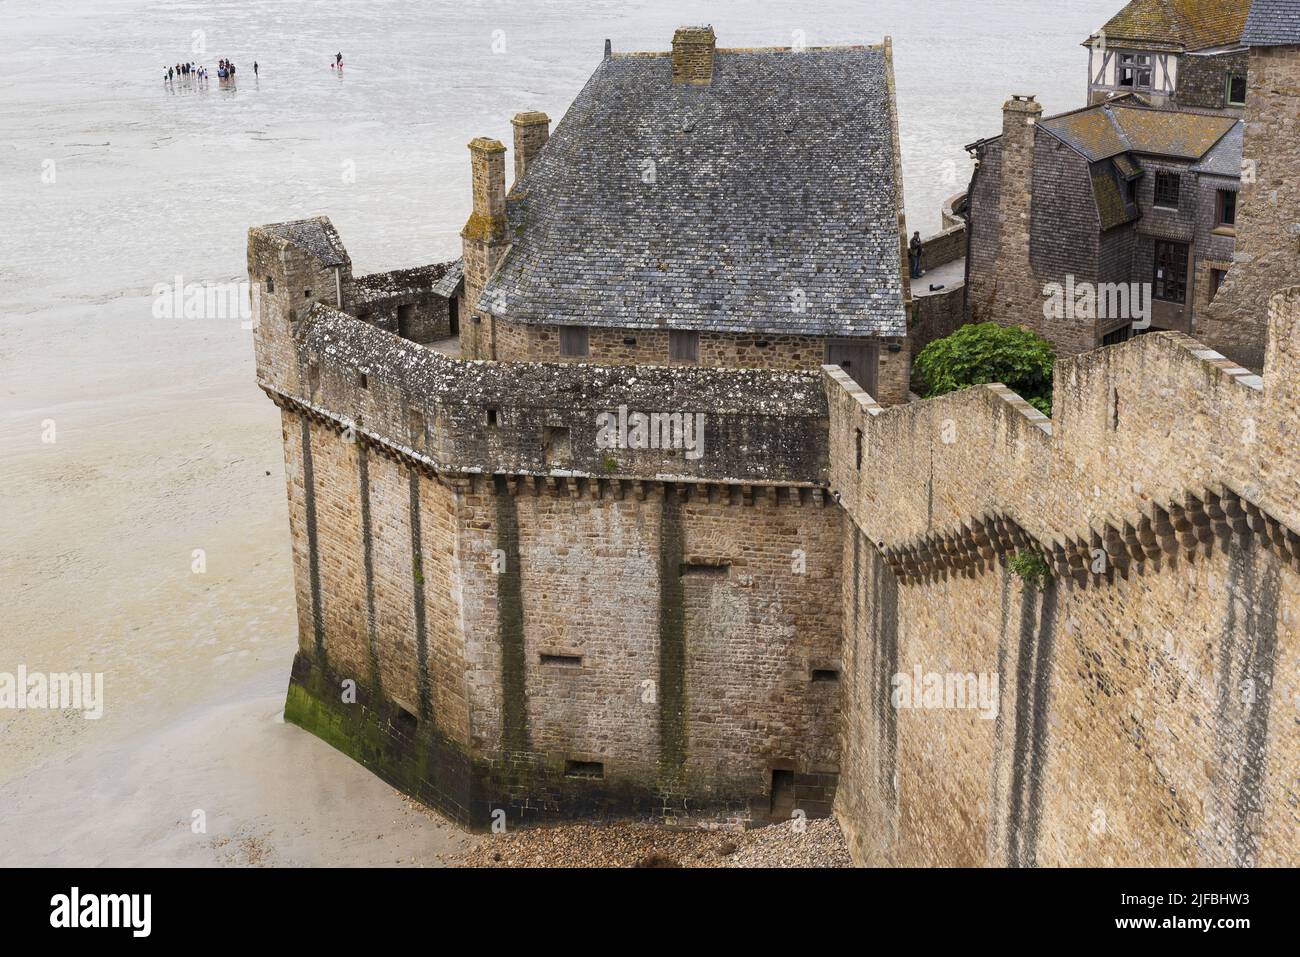 Francia, La Mancha, Mont Saint Michel Bay catalogado como Patrimonio de la Humanidad por la UNESCO, la abadía de Mont Saint Michel, murallas, marea baja, los excursionistas que cruzan la bahía a pie Foto de stock